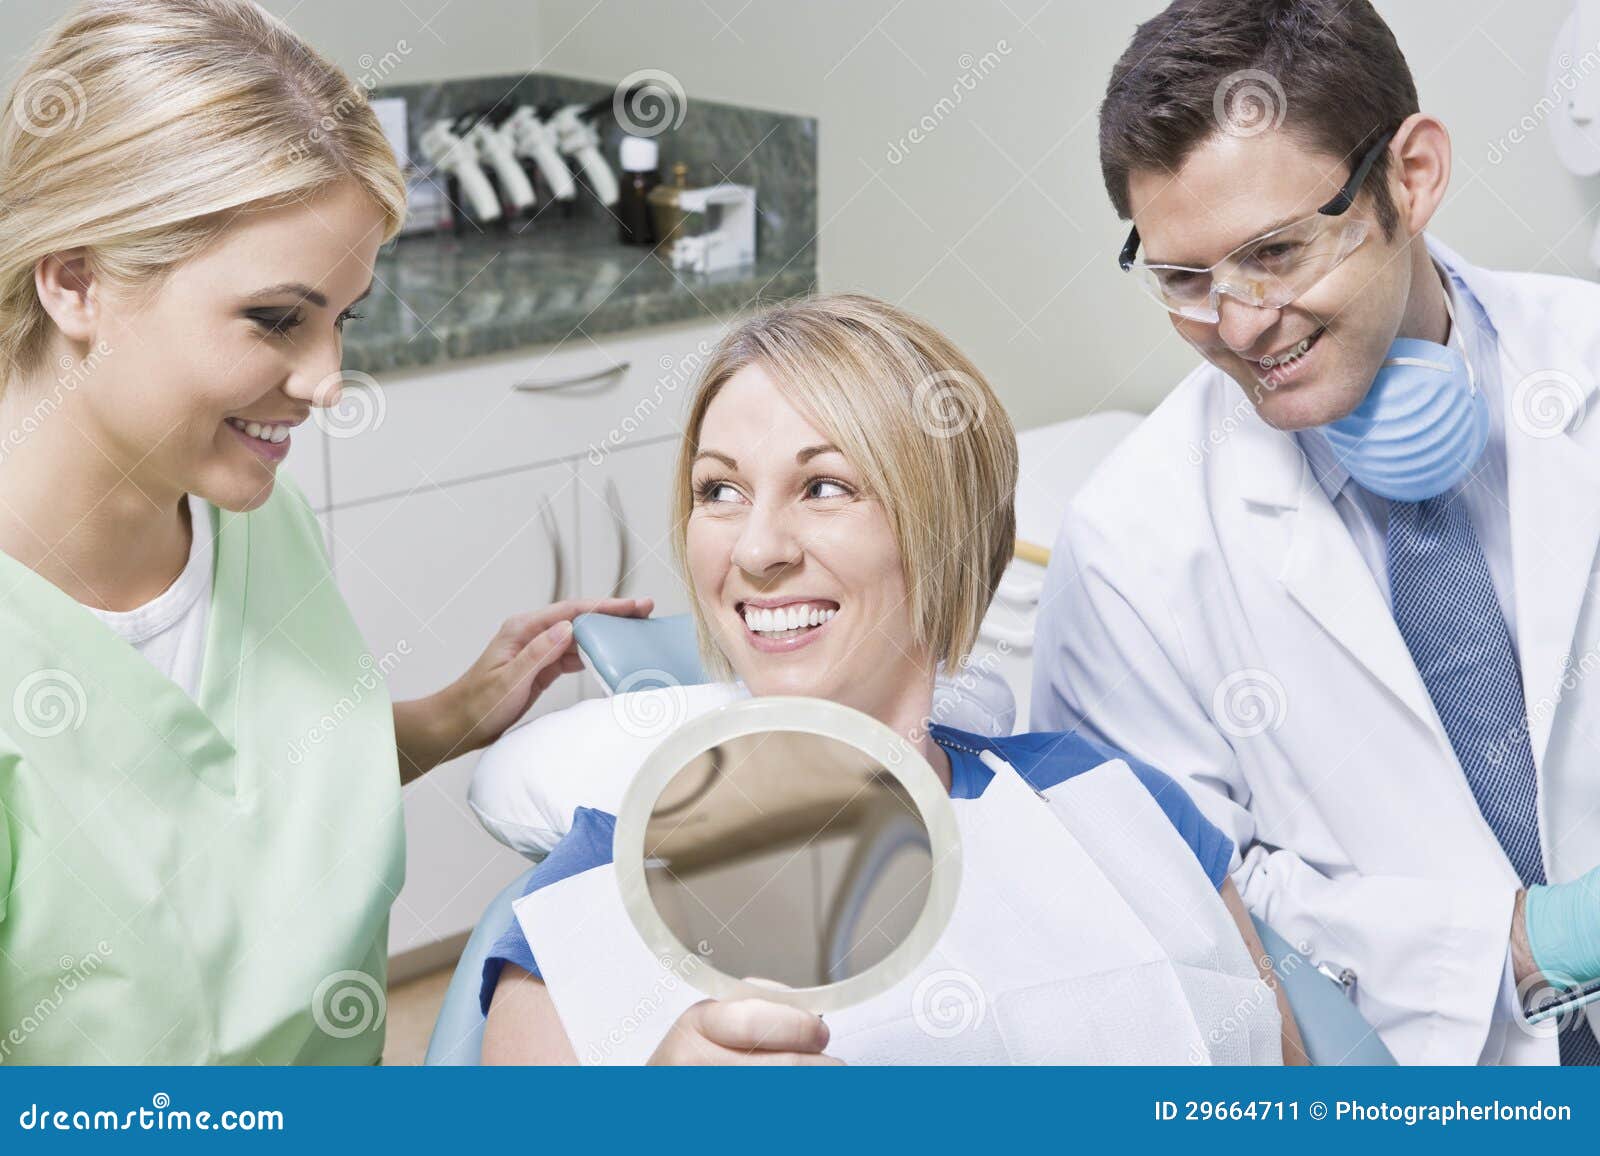 Espelho de And Patient Using do dentista